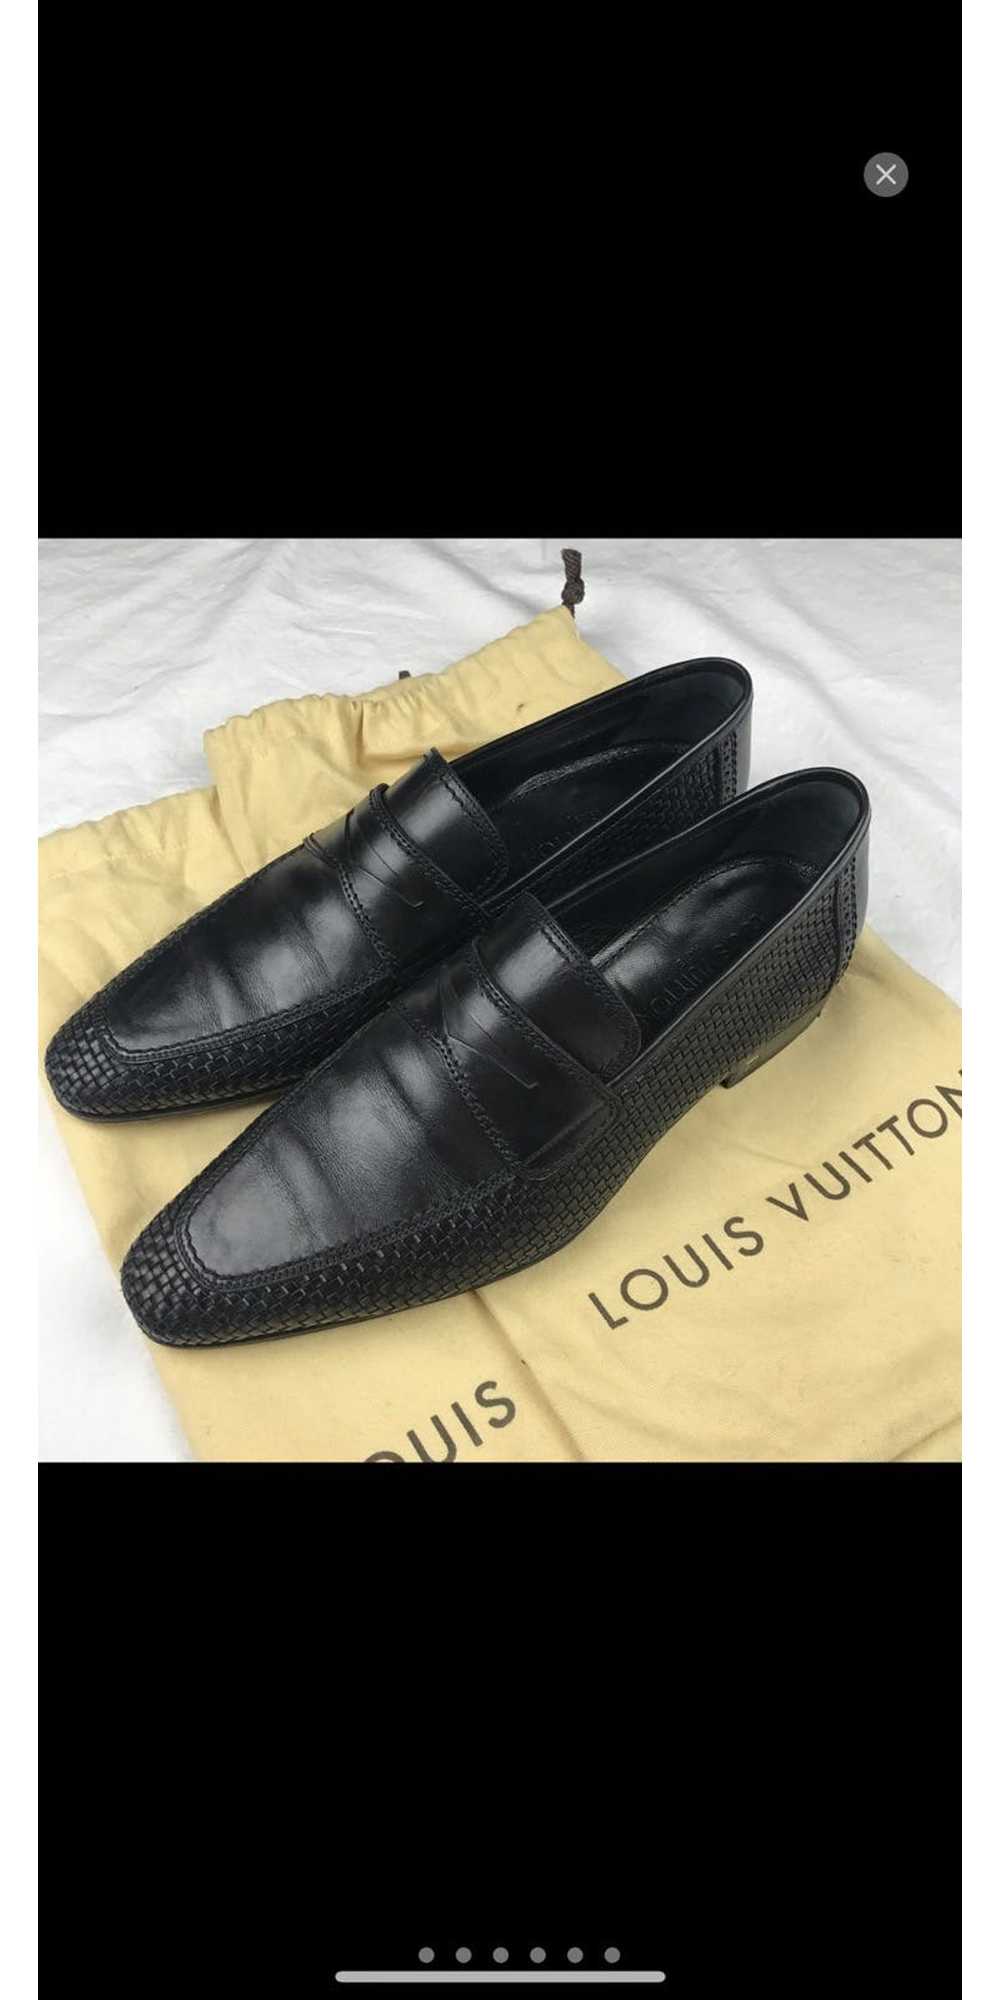 Louis vuitton dress shoes - Gem